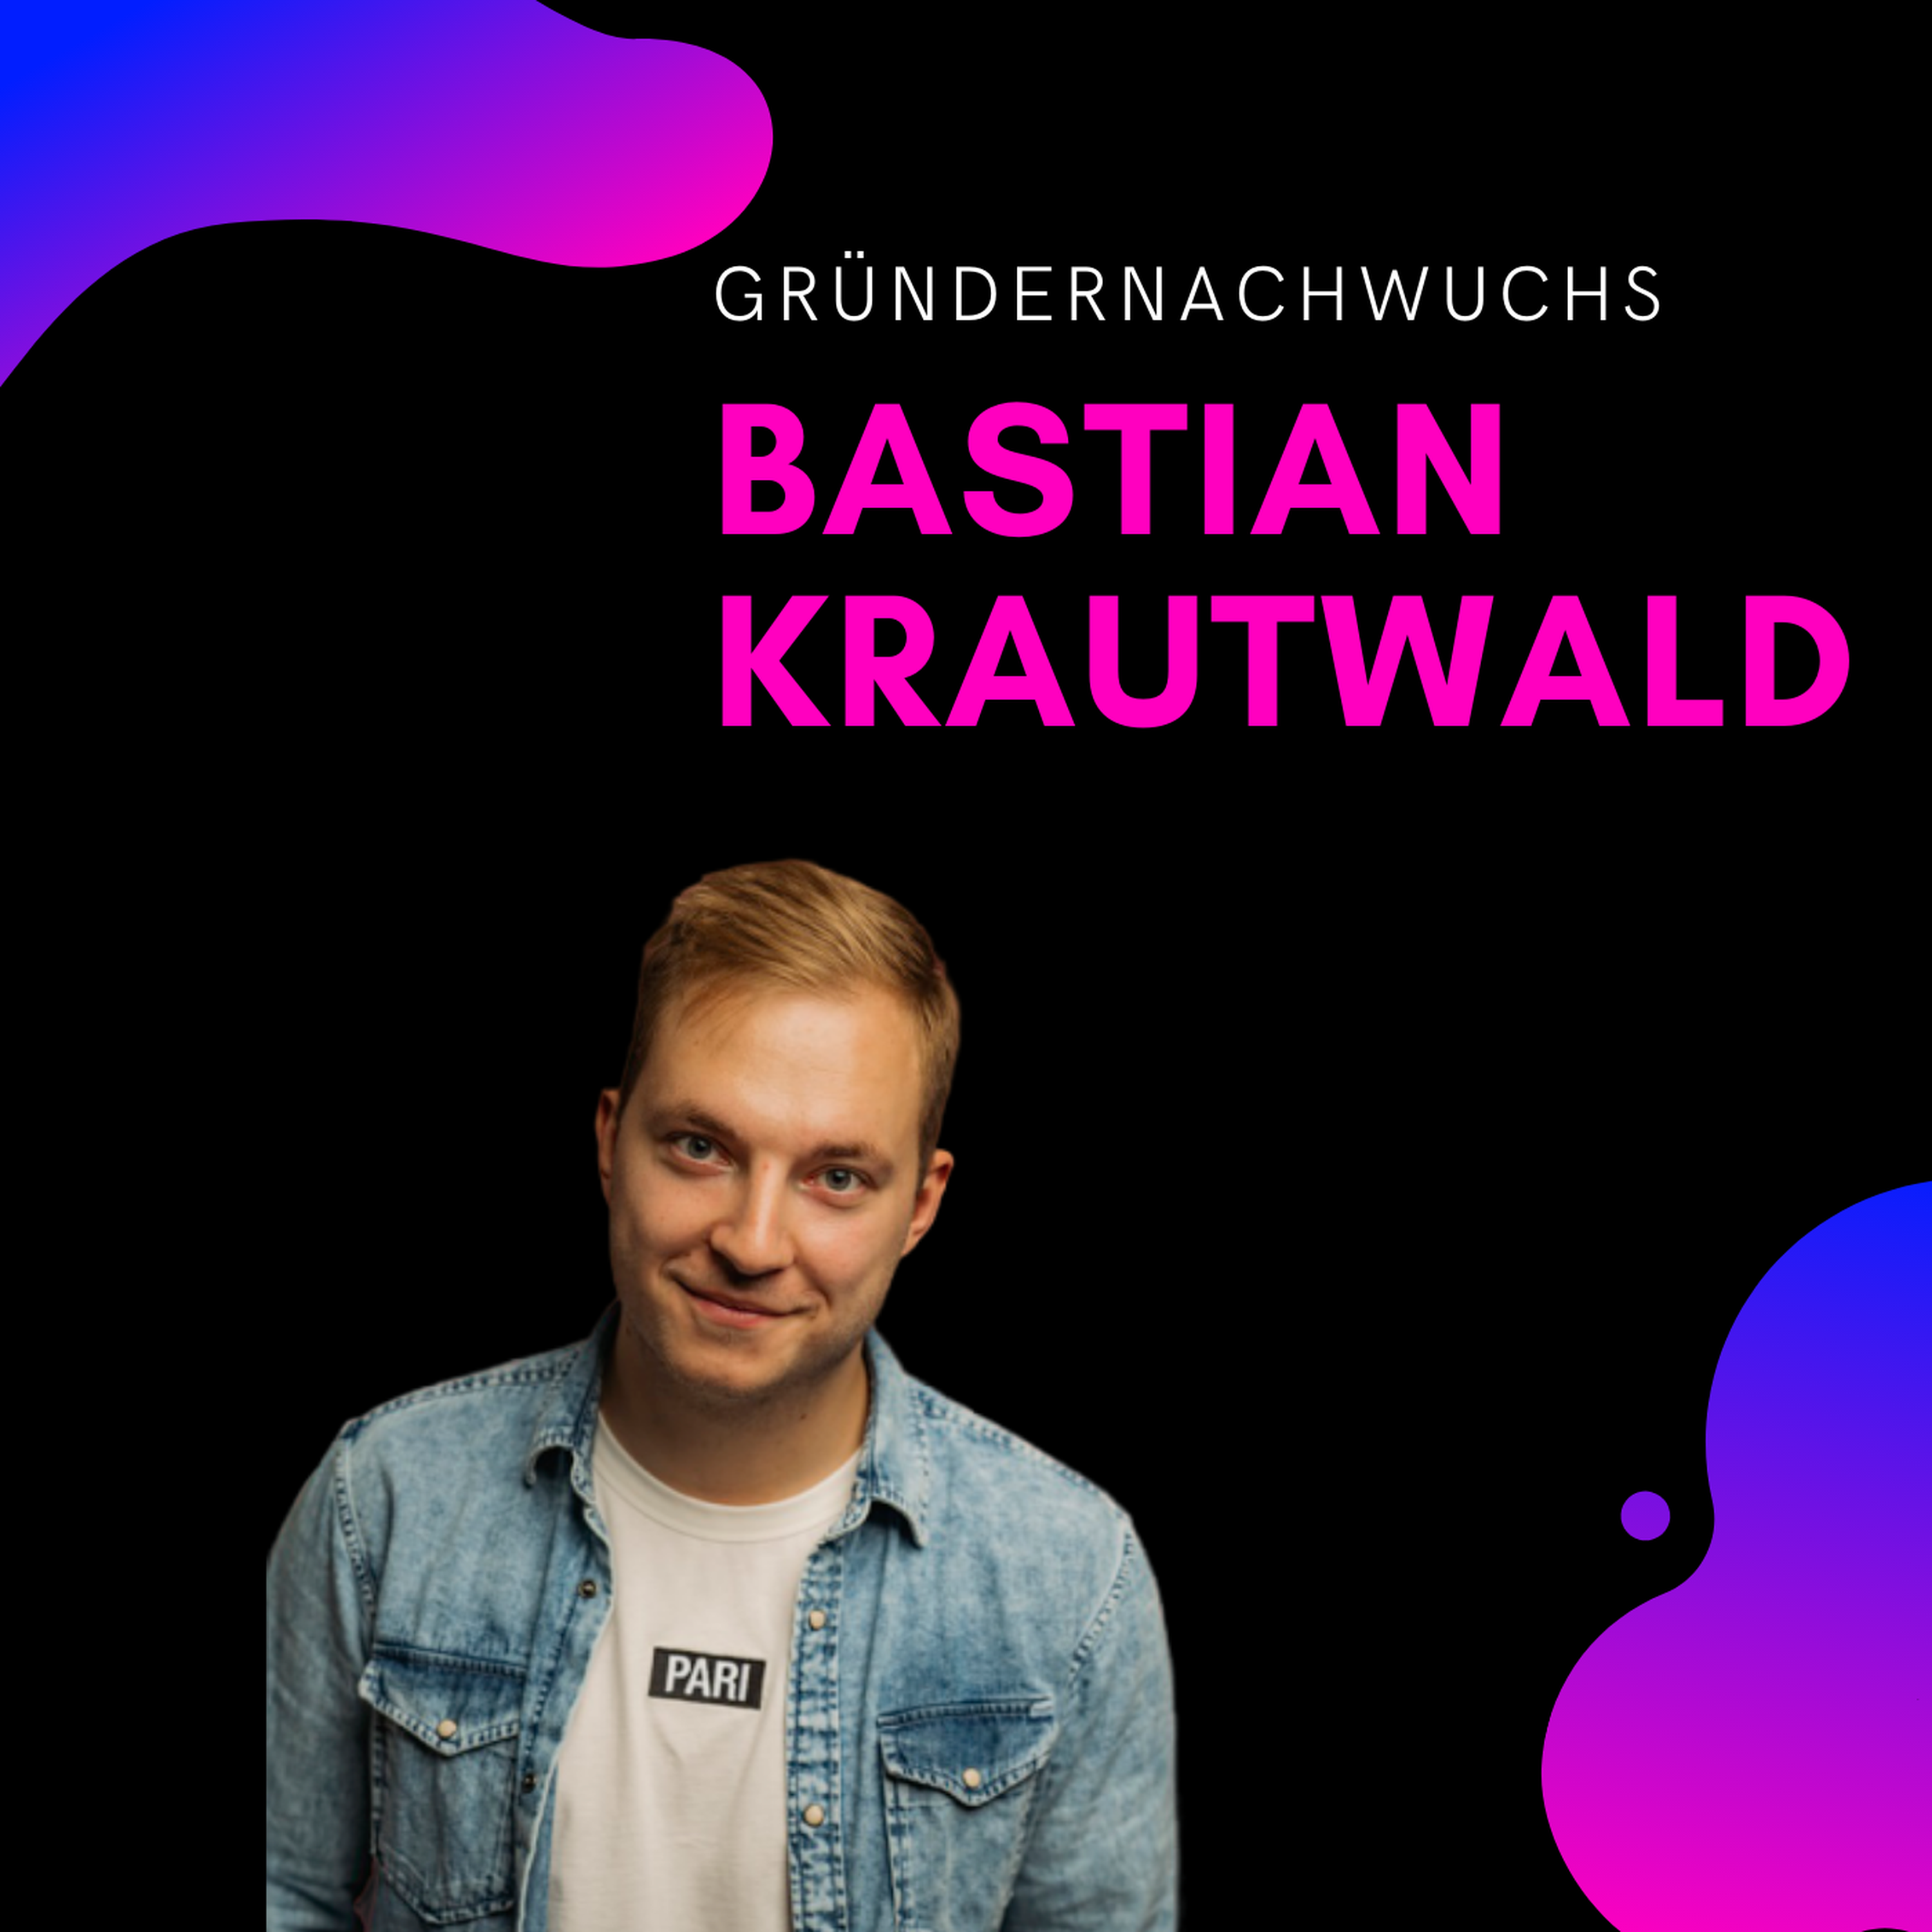 Bastian Krautwald, deineStudienfinanzierung | Gründernachwuchs